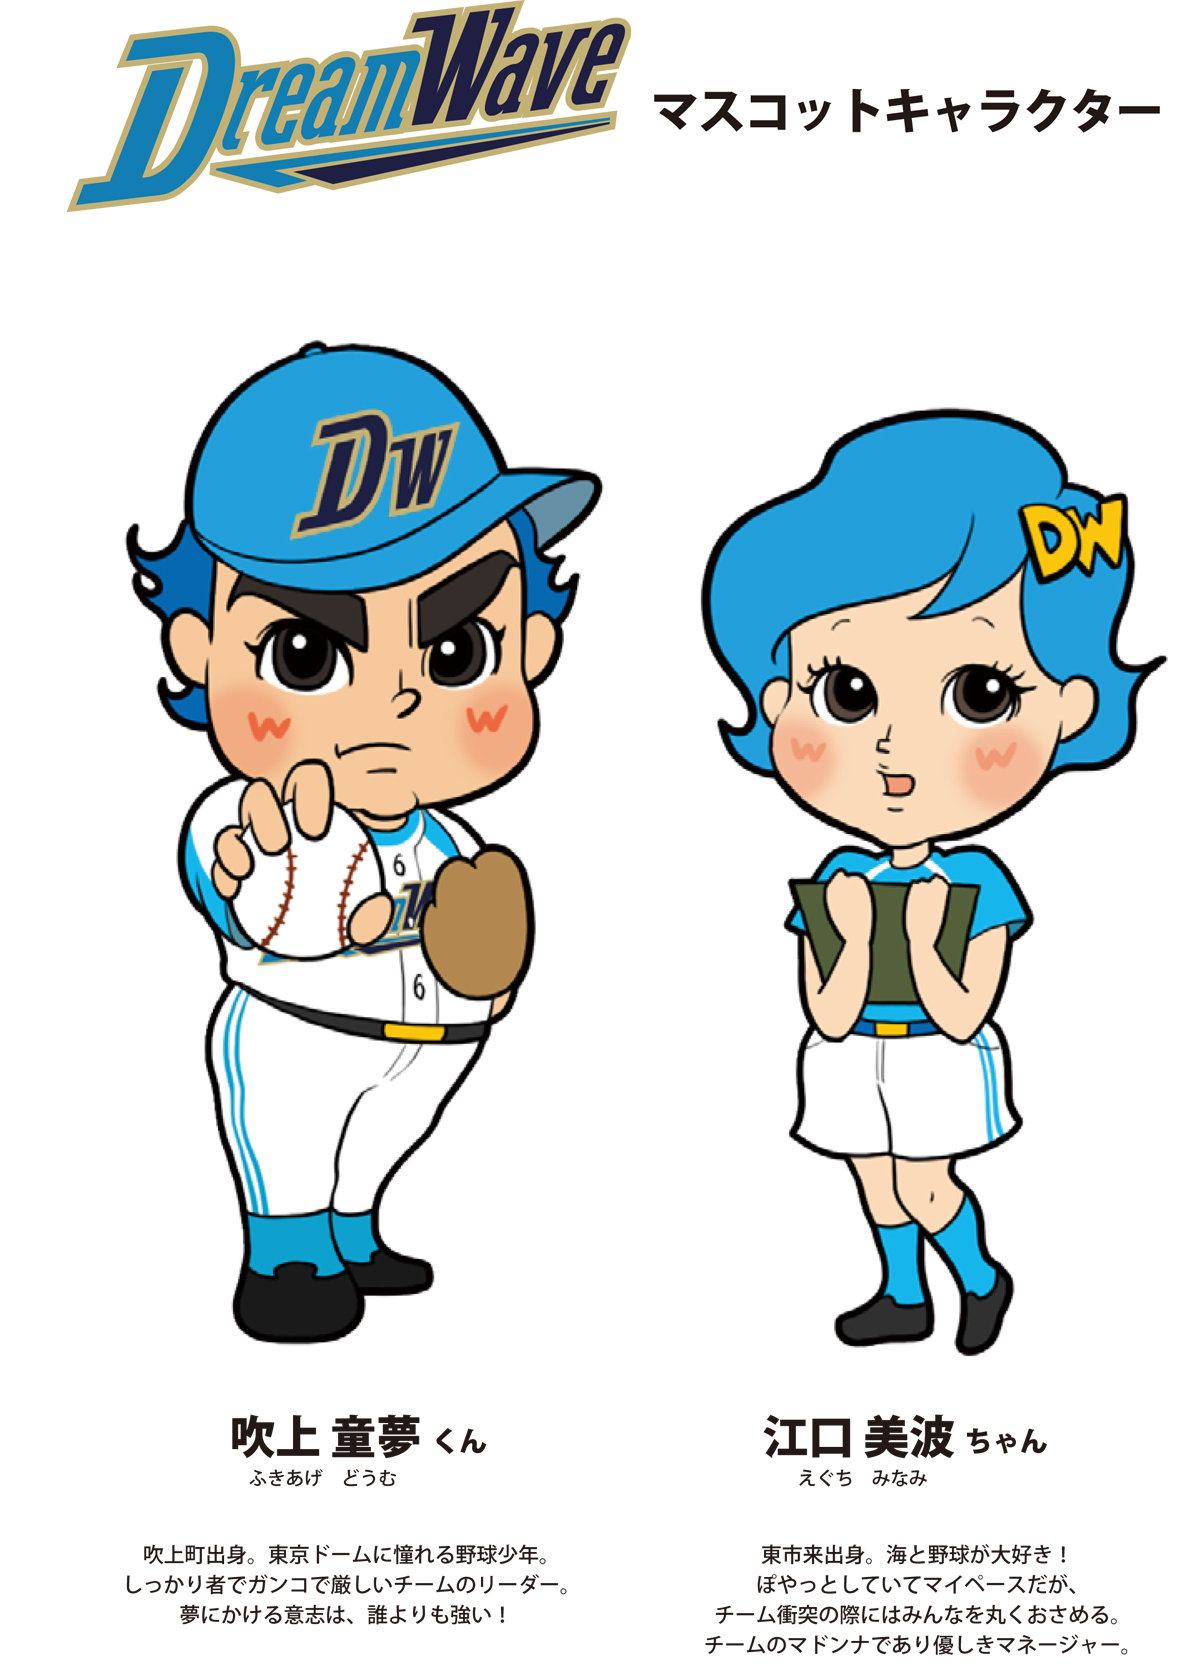 公式マスコットキャラクター発表 社会人野球クラブチーム 鹿児島ドリームウェーブ